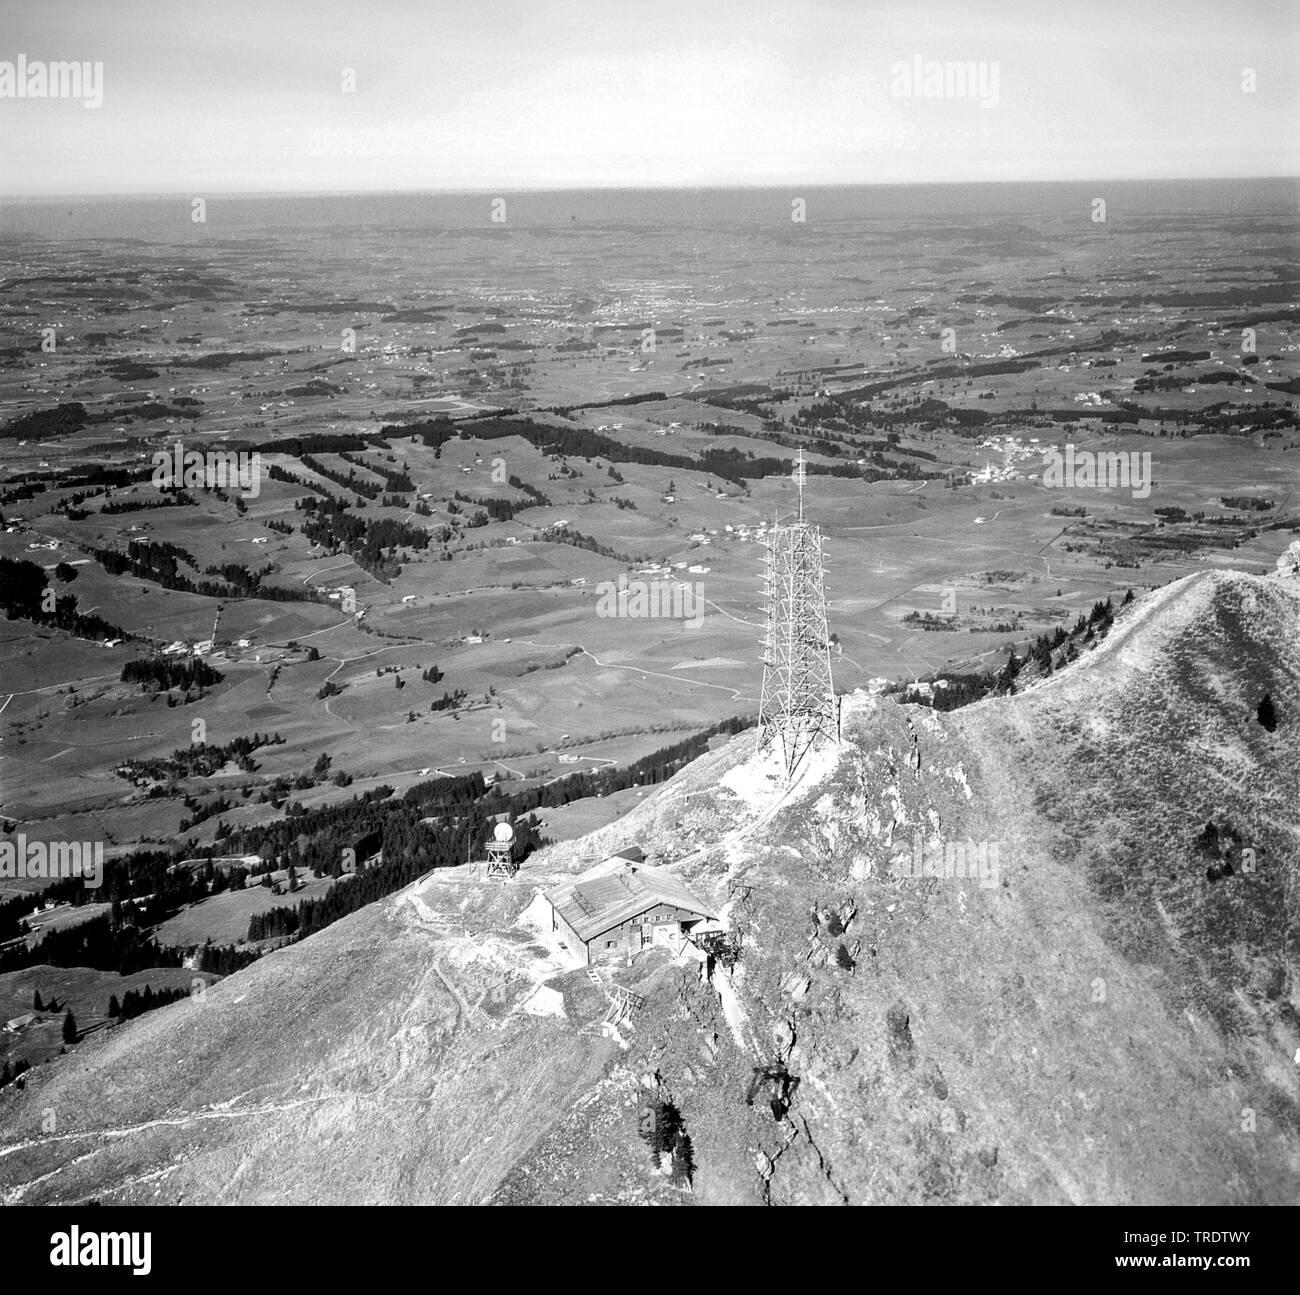 Berg Gruenten im Algaeu Alpen, Bau eines Senders Mast, Luftbild, zwischen 1958 und 1963 genommen, Deutschland, Bayern Stockfoto